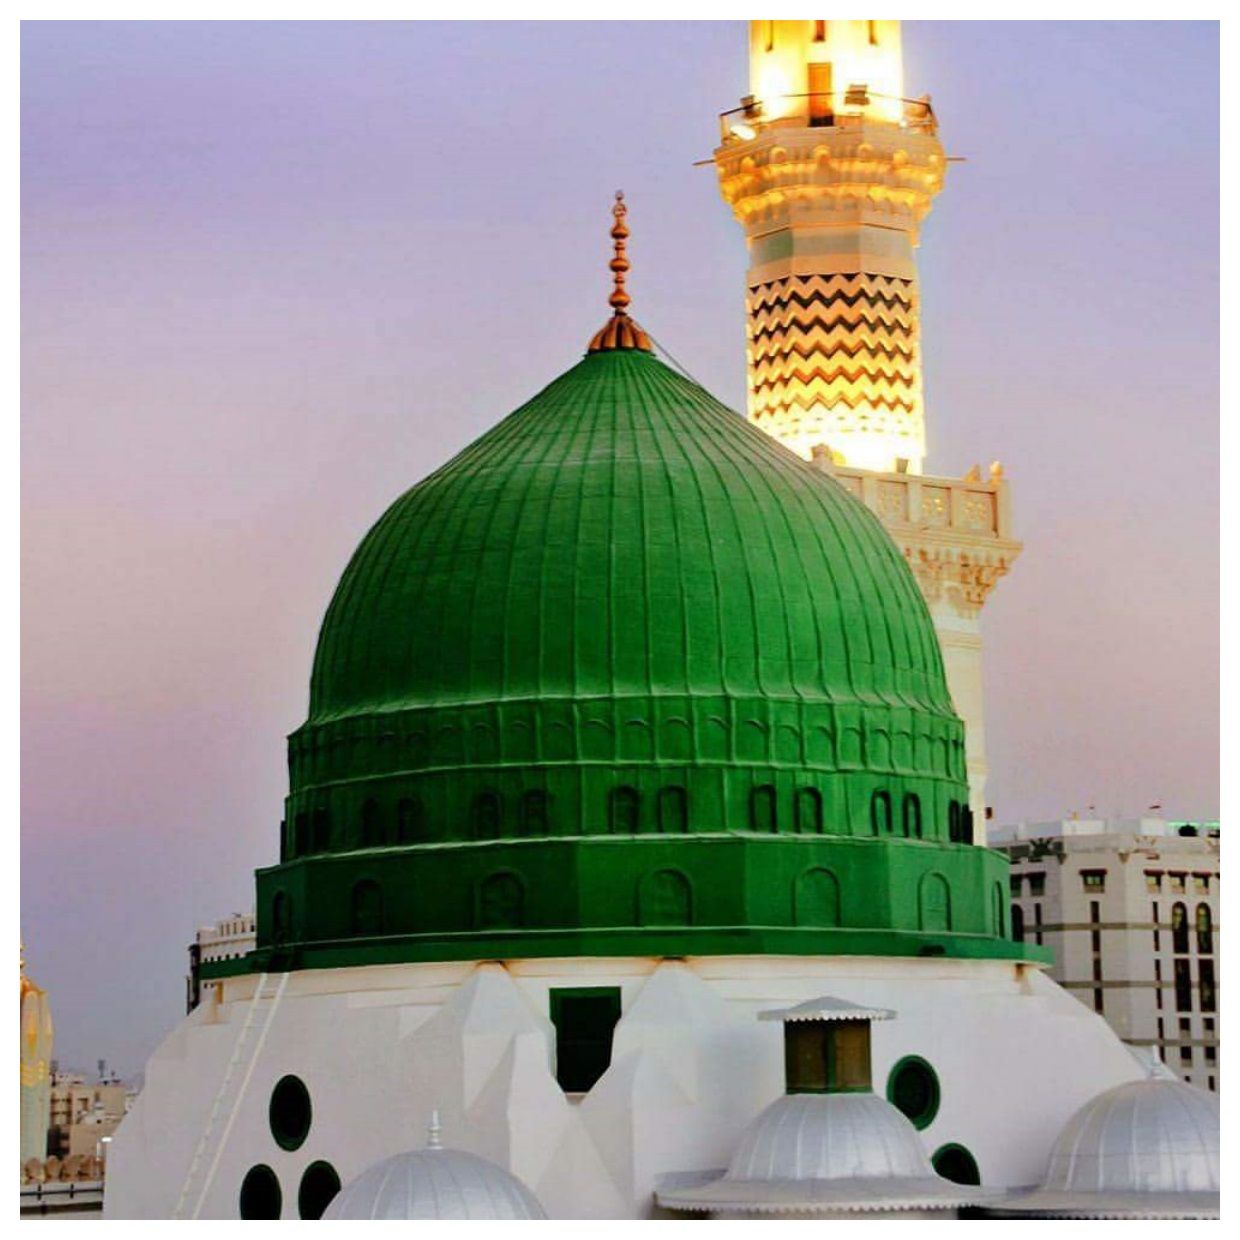 نمای معنوی مسجد پیامبر با گنبد سبز برای پروفایل